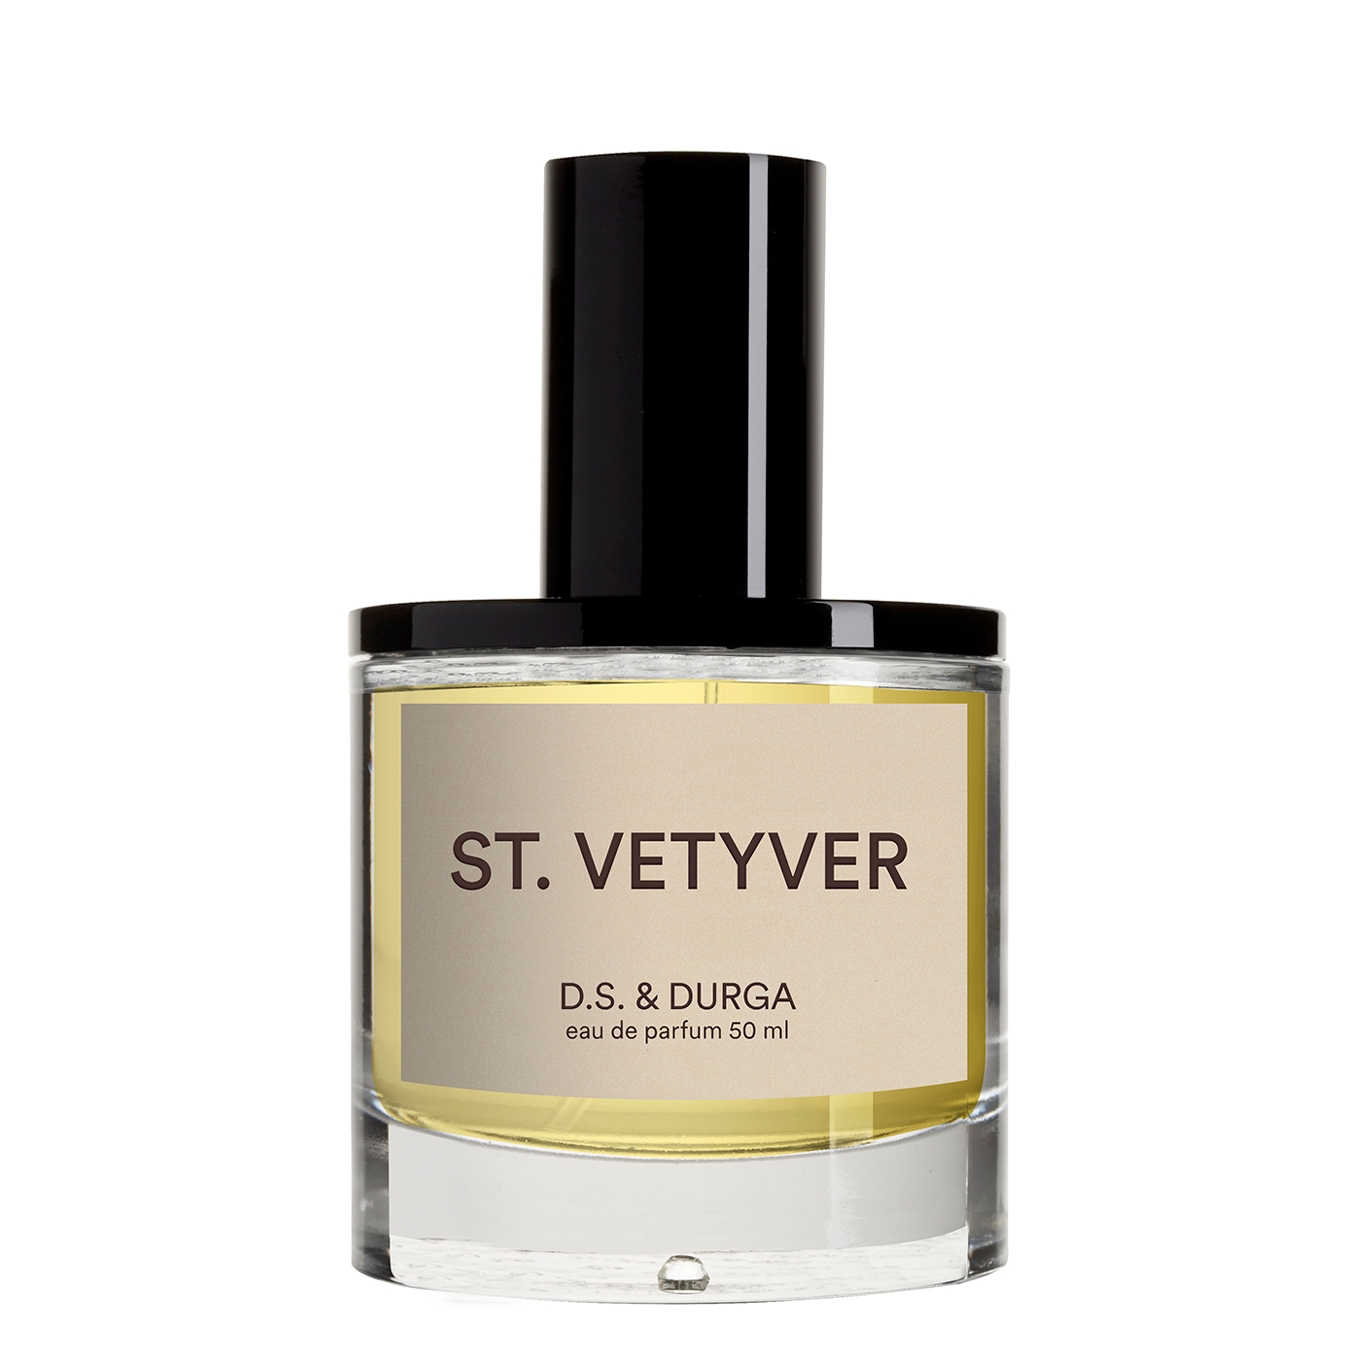 D.S. & Durga St. Vetyver Eau De Parfum 50ml